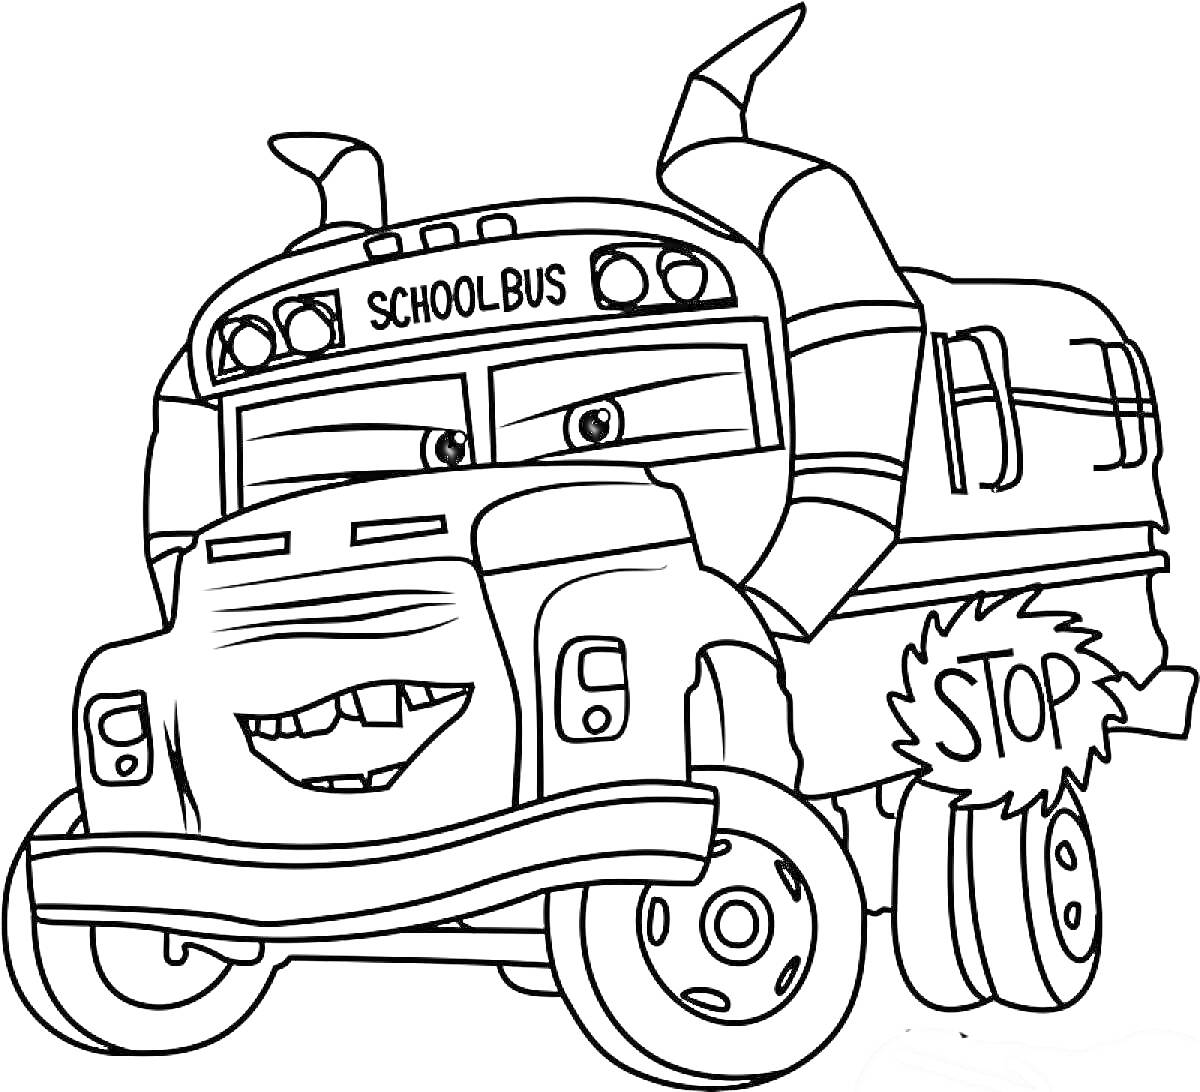 Школьный автобус с рогами и табличкой 